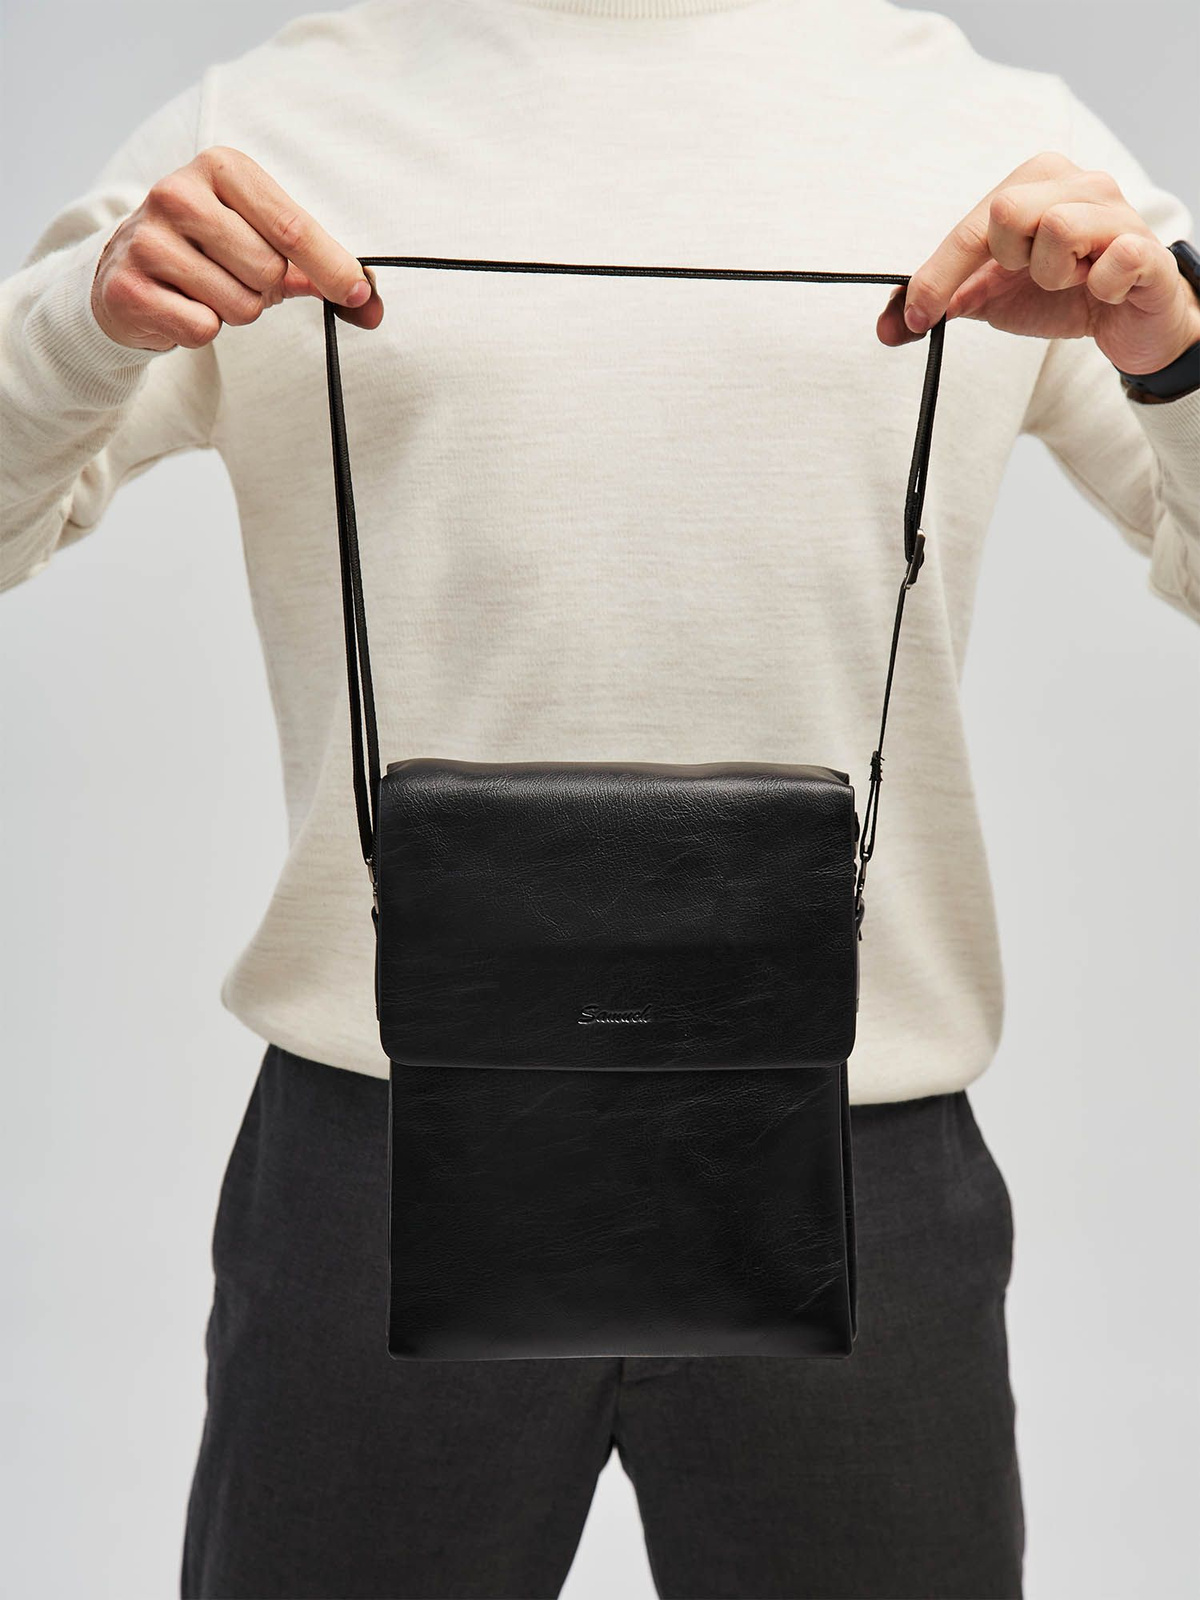 Стильная и практичная кожаная мужская сумка через плечо кожаная отличный выбор для активных и модных мужчин. Эта сумка идеально подходит для повседневной жизни, для работы в офисе или на деловых встречах.